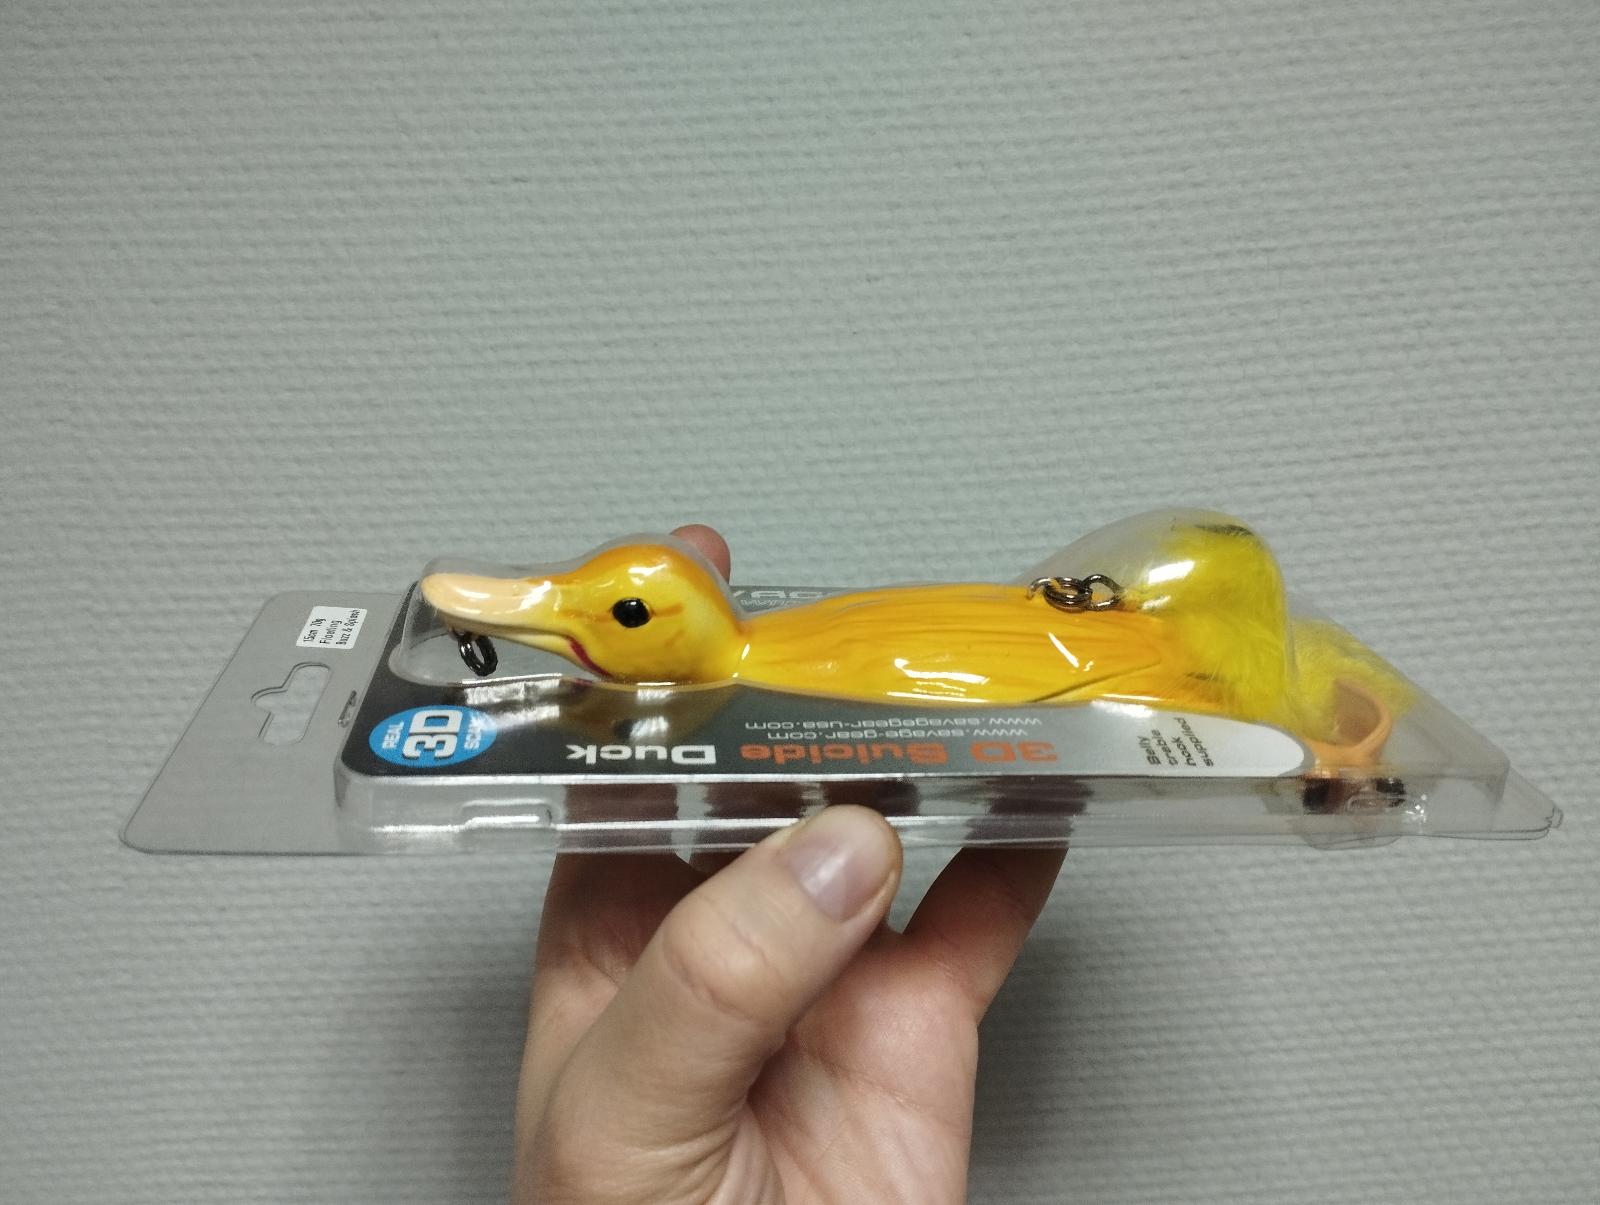 Воблер Savage Gear 3D Suicide Duck 150 Floating Yellow 15см, 70г, плавающий, поверхностный